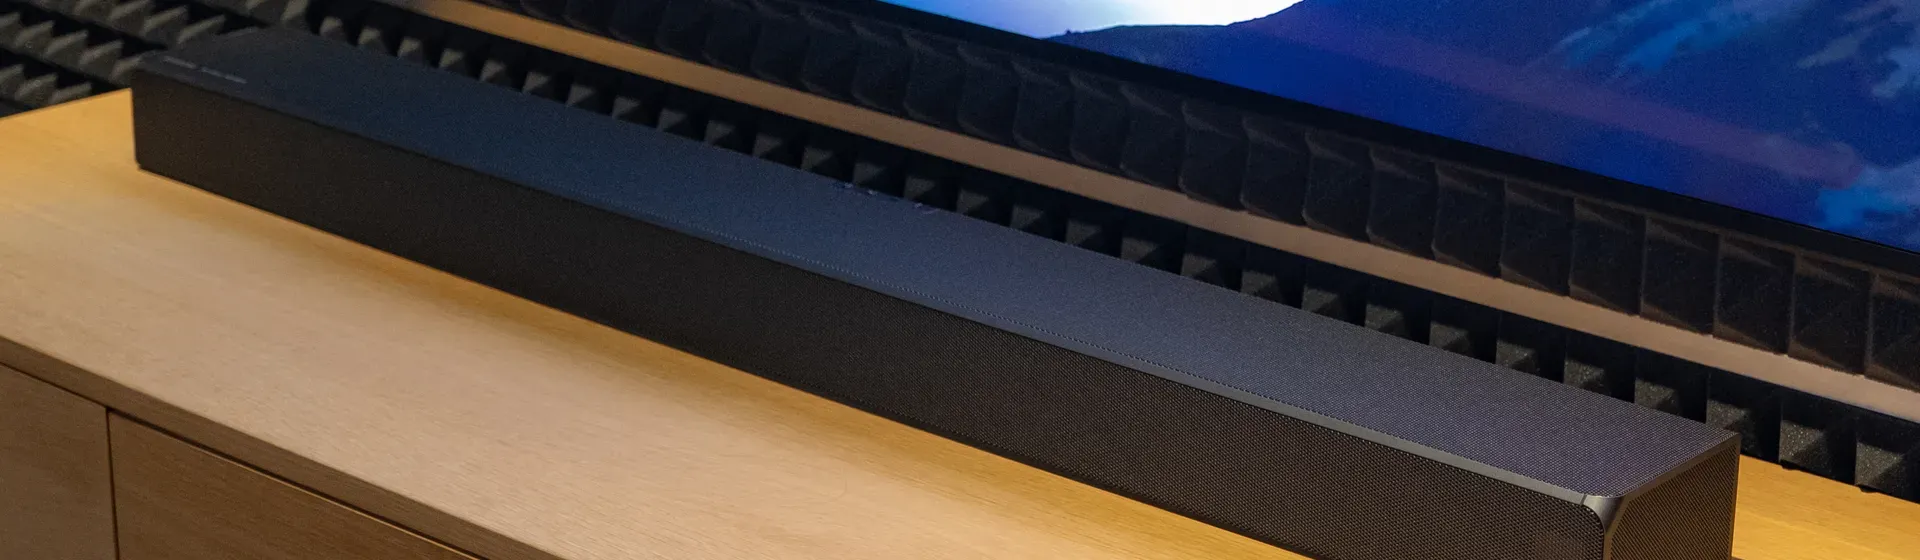 Melhor home theater Samsung: 6 soundbars para comprar em 2022